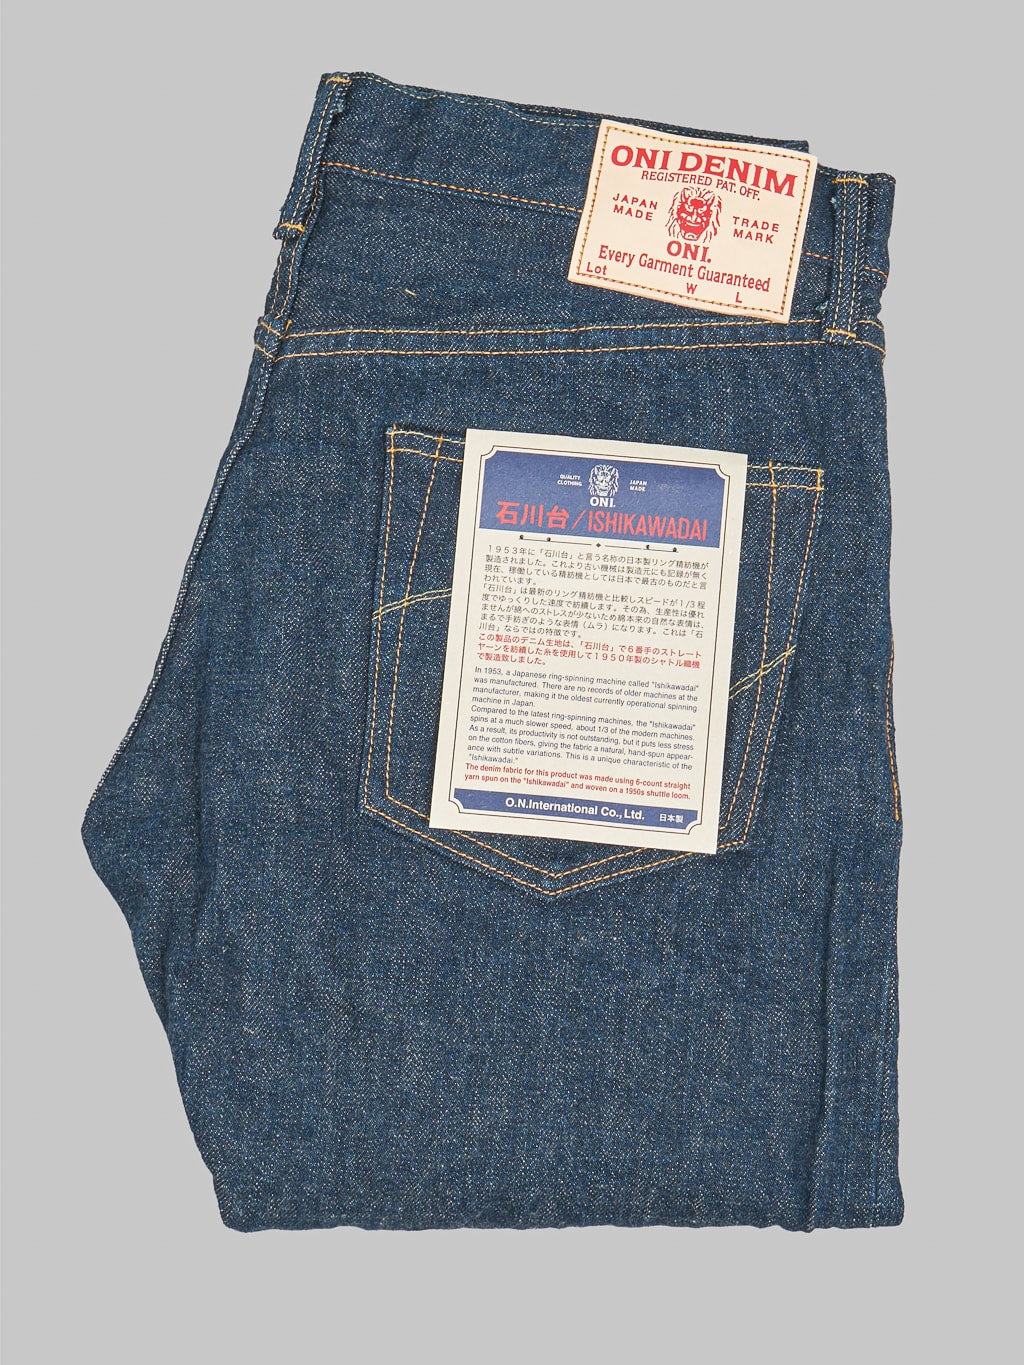 ONI Denim 902 Ishikawadai 15oz Jeans uneven texture